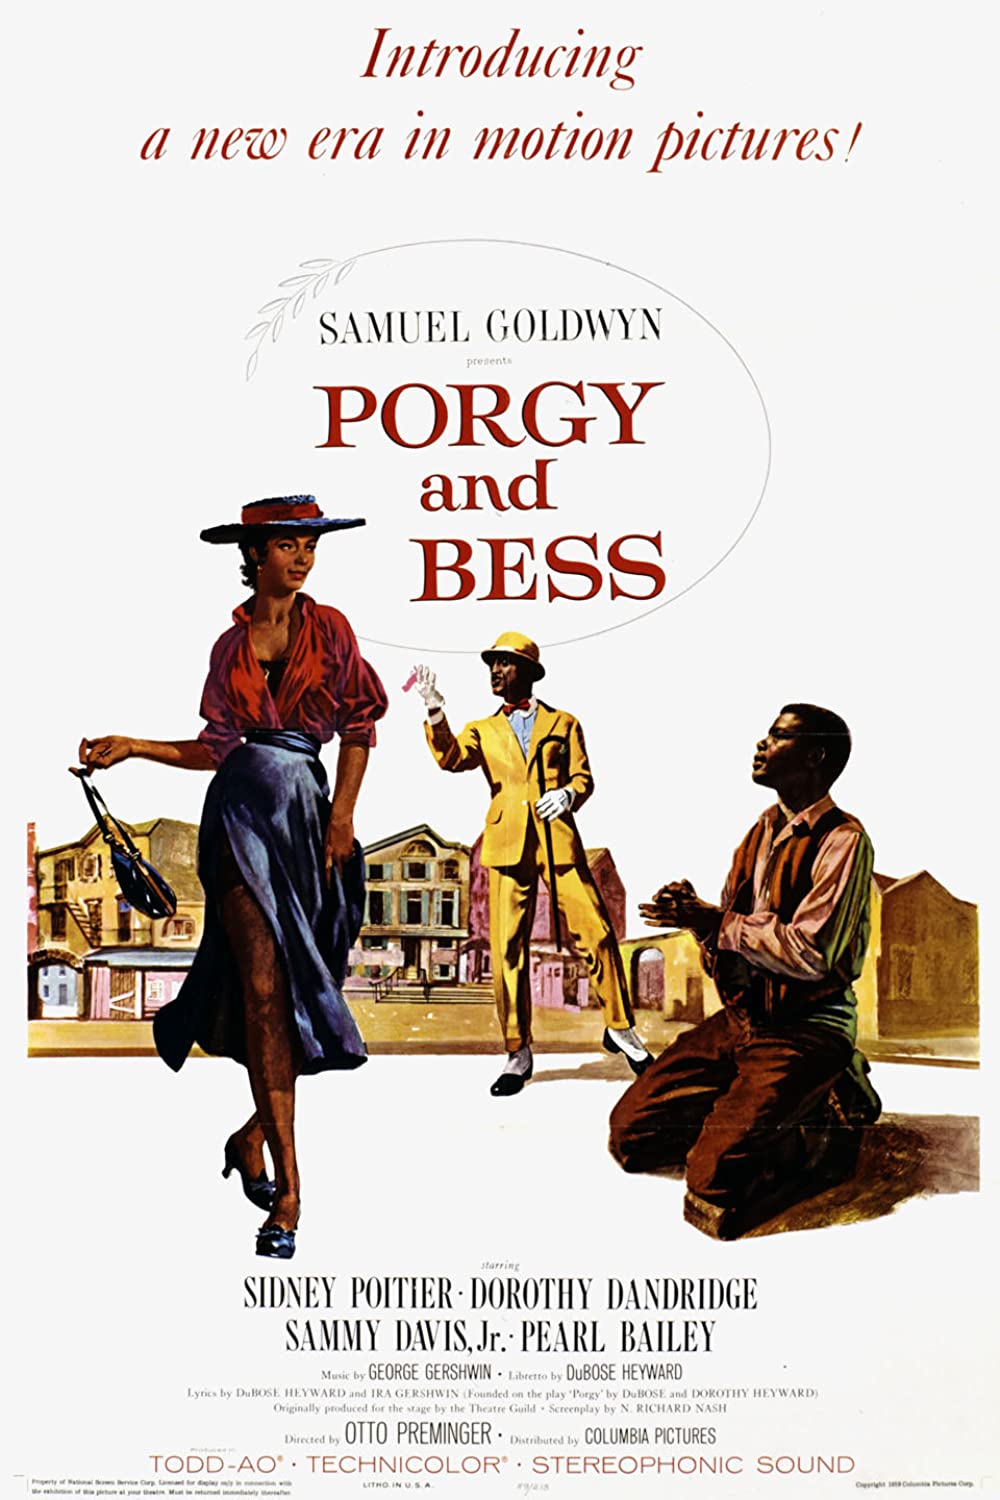 Filmbeschreibung zu Porgy and Bess